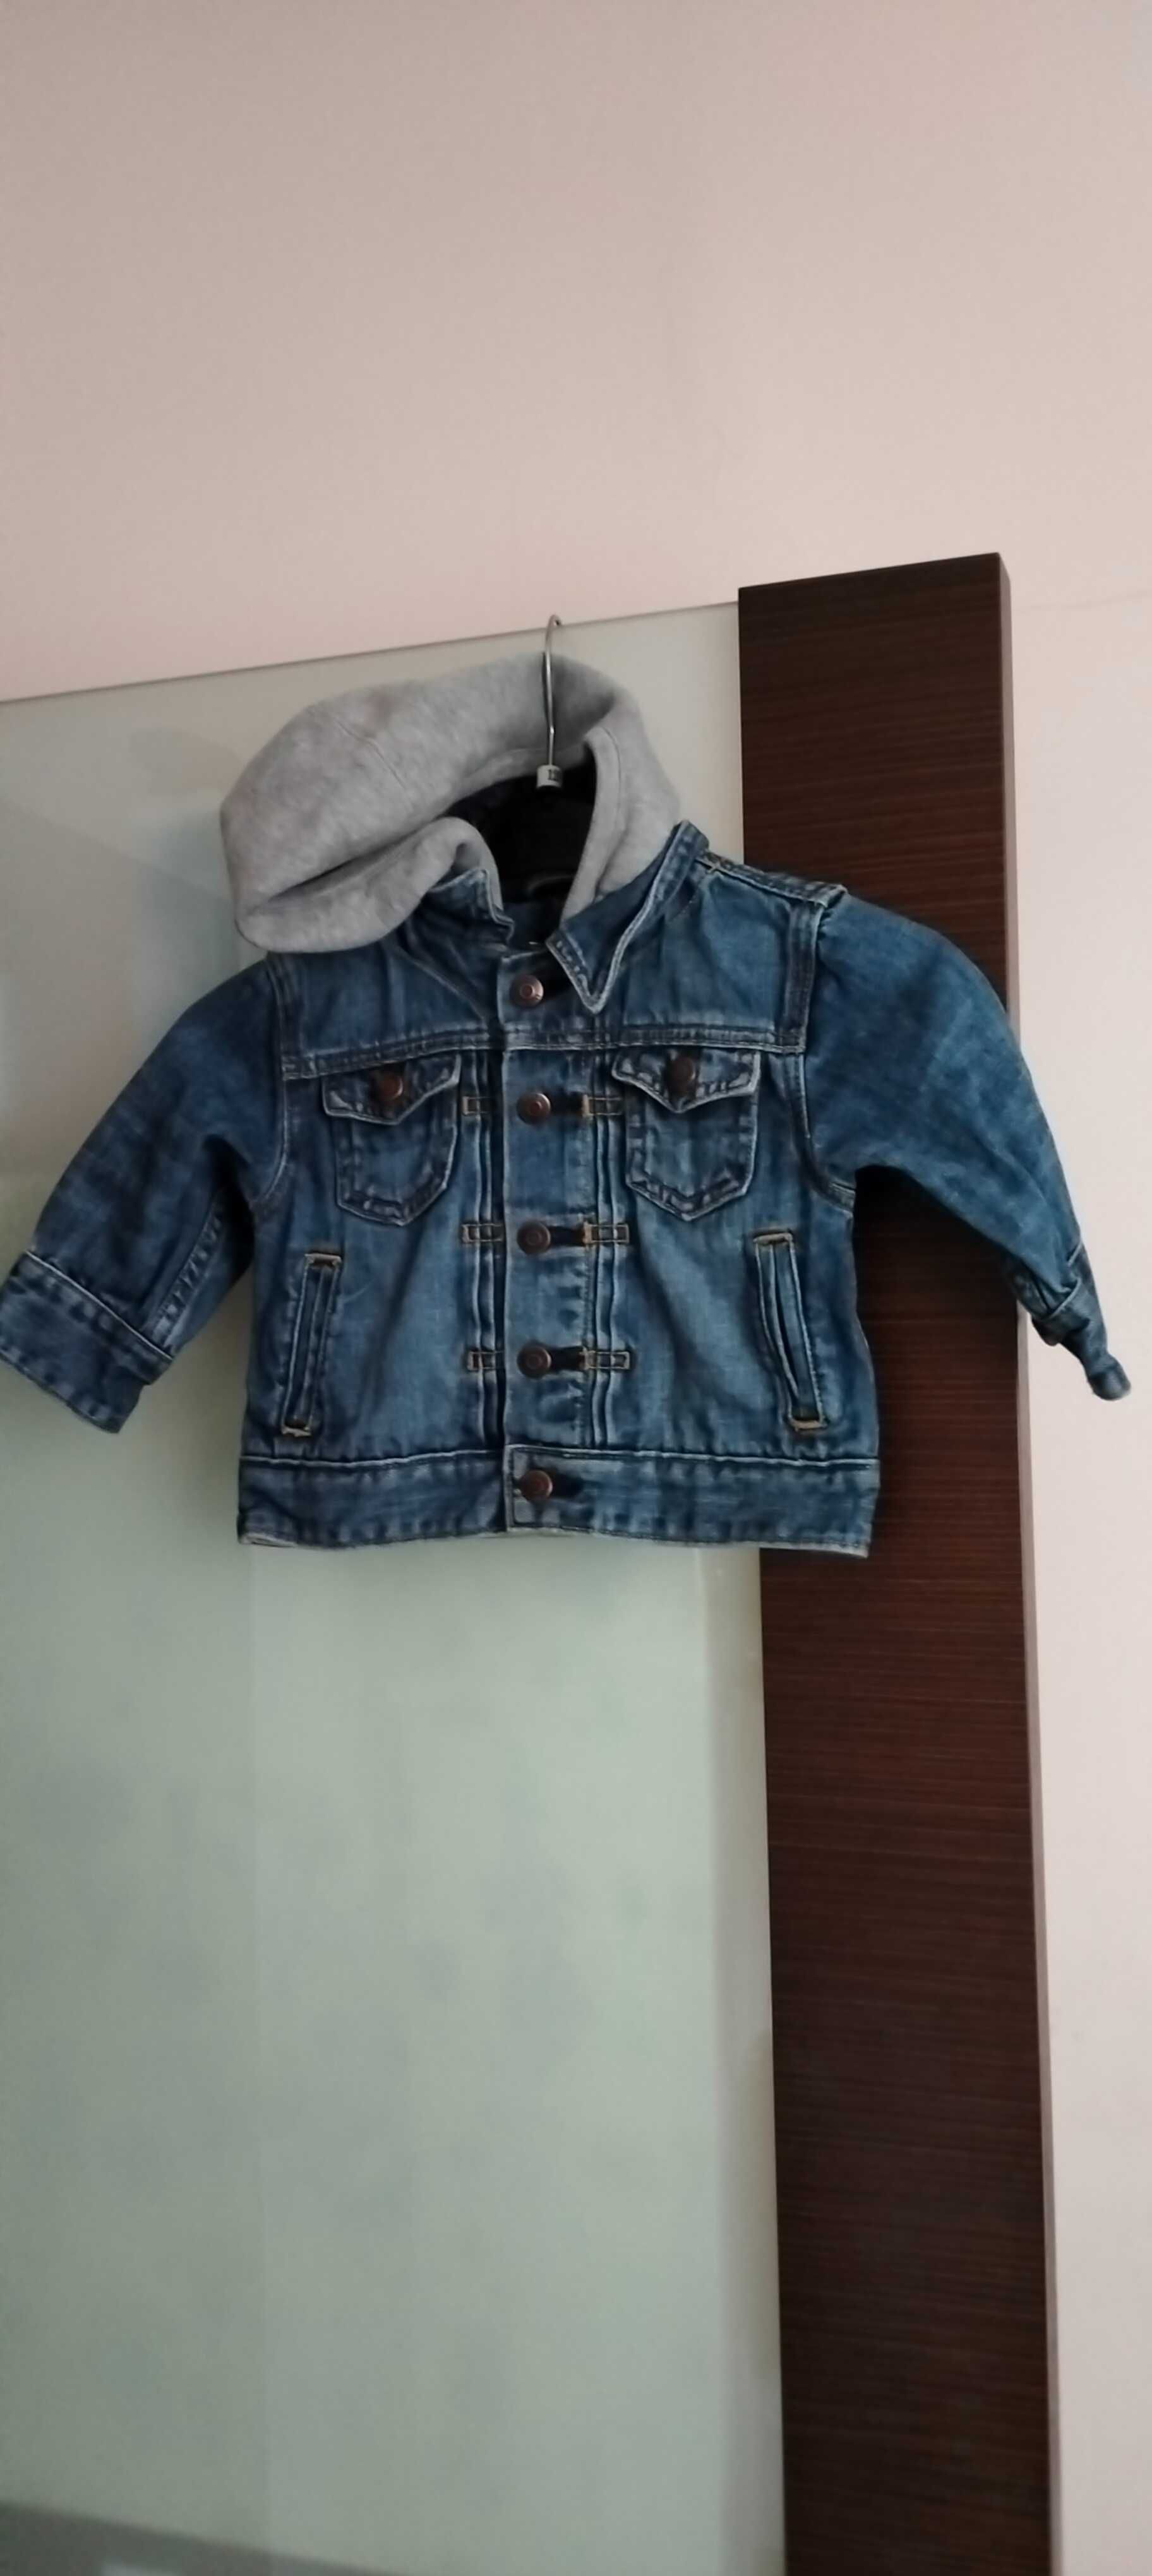 chłopięca jeansowa kurtka marki Gap Baby rozmiar 12-18 miesięcy